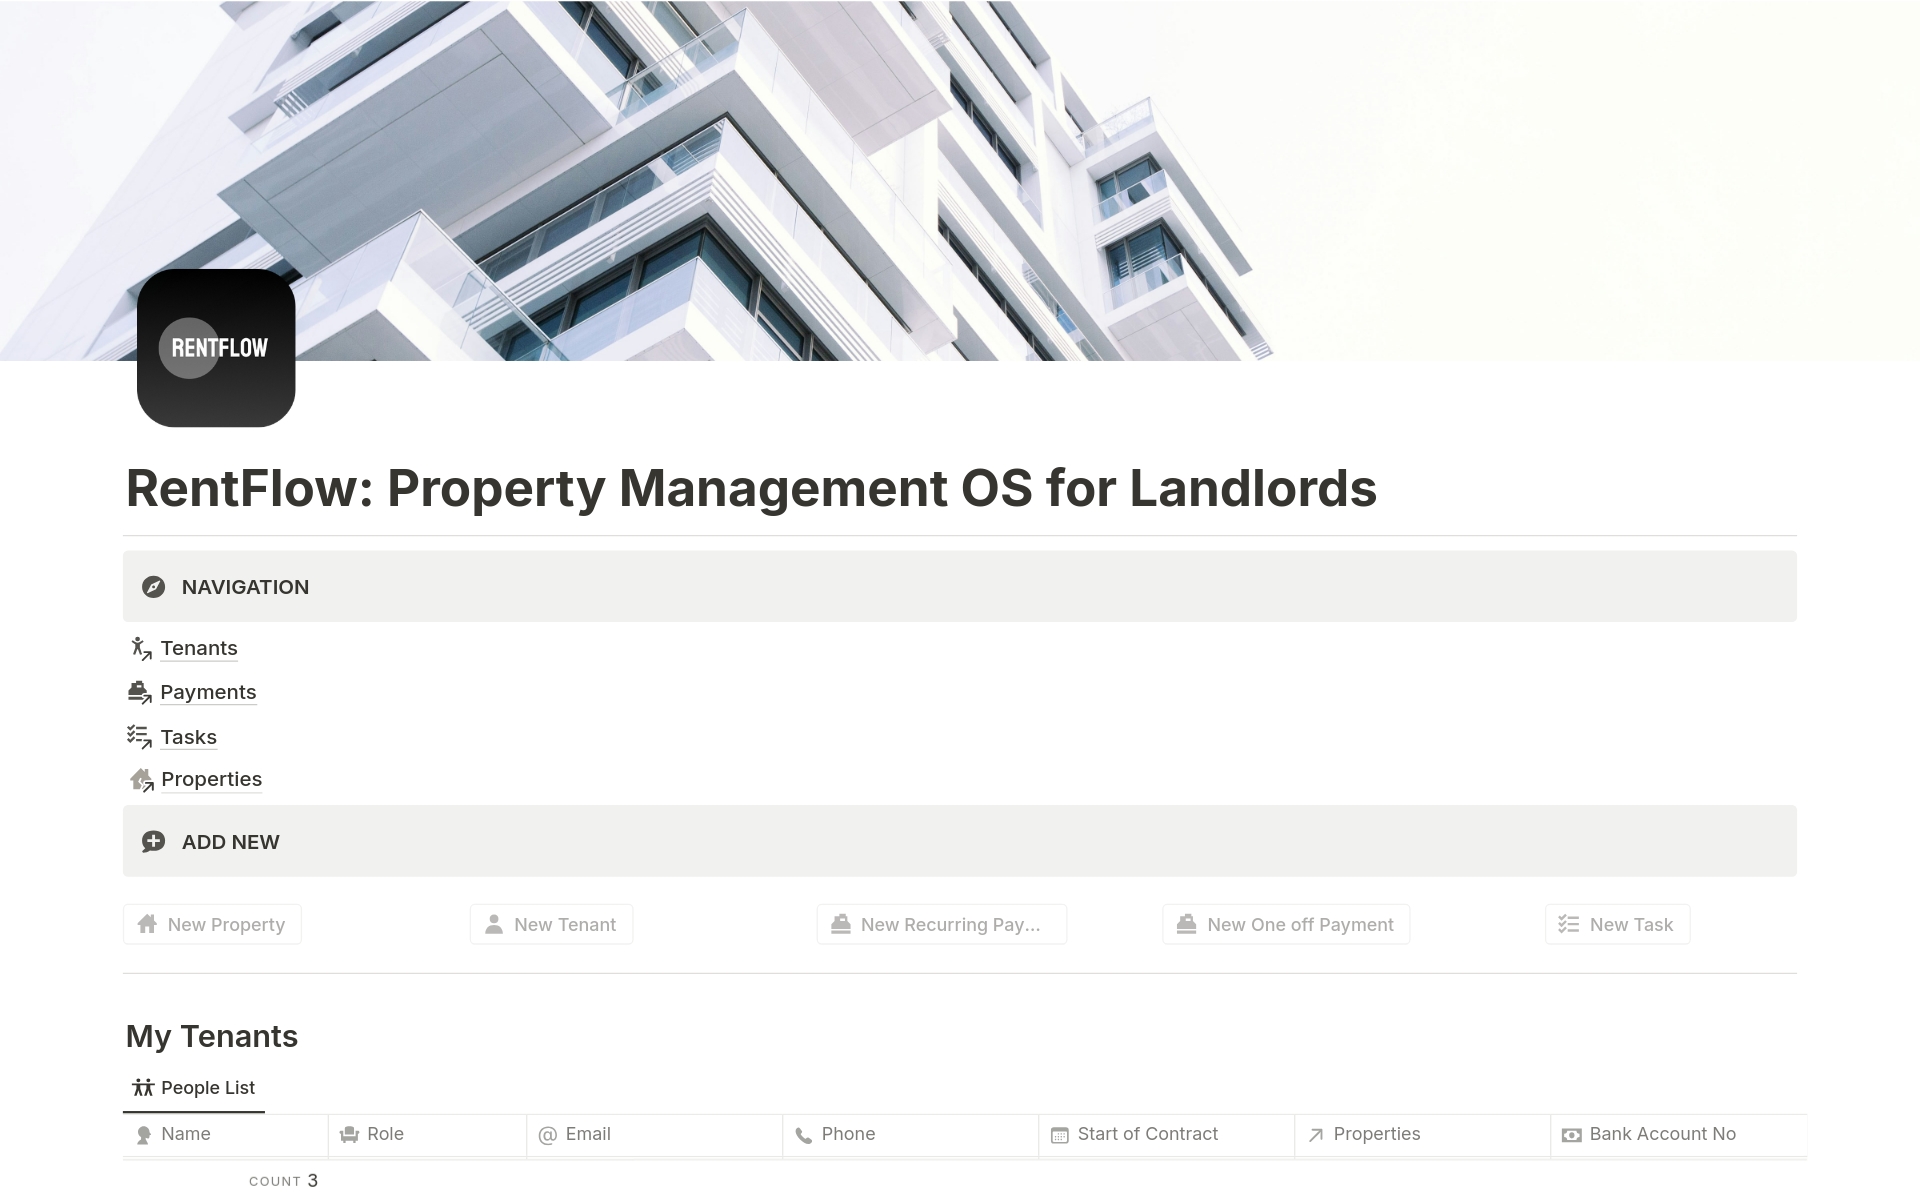 Uma prévia do modelo para RentFlow: Property Management OS for Landlords